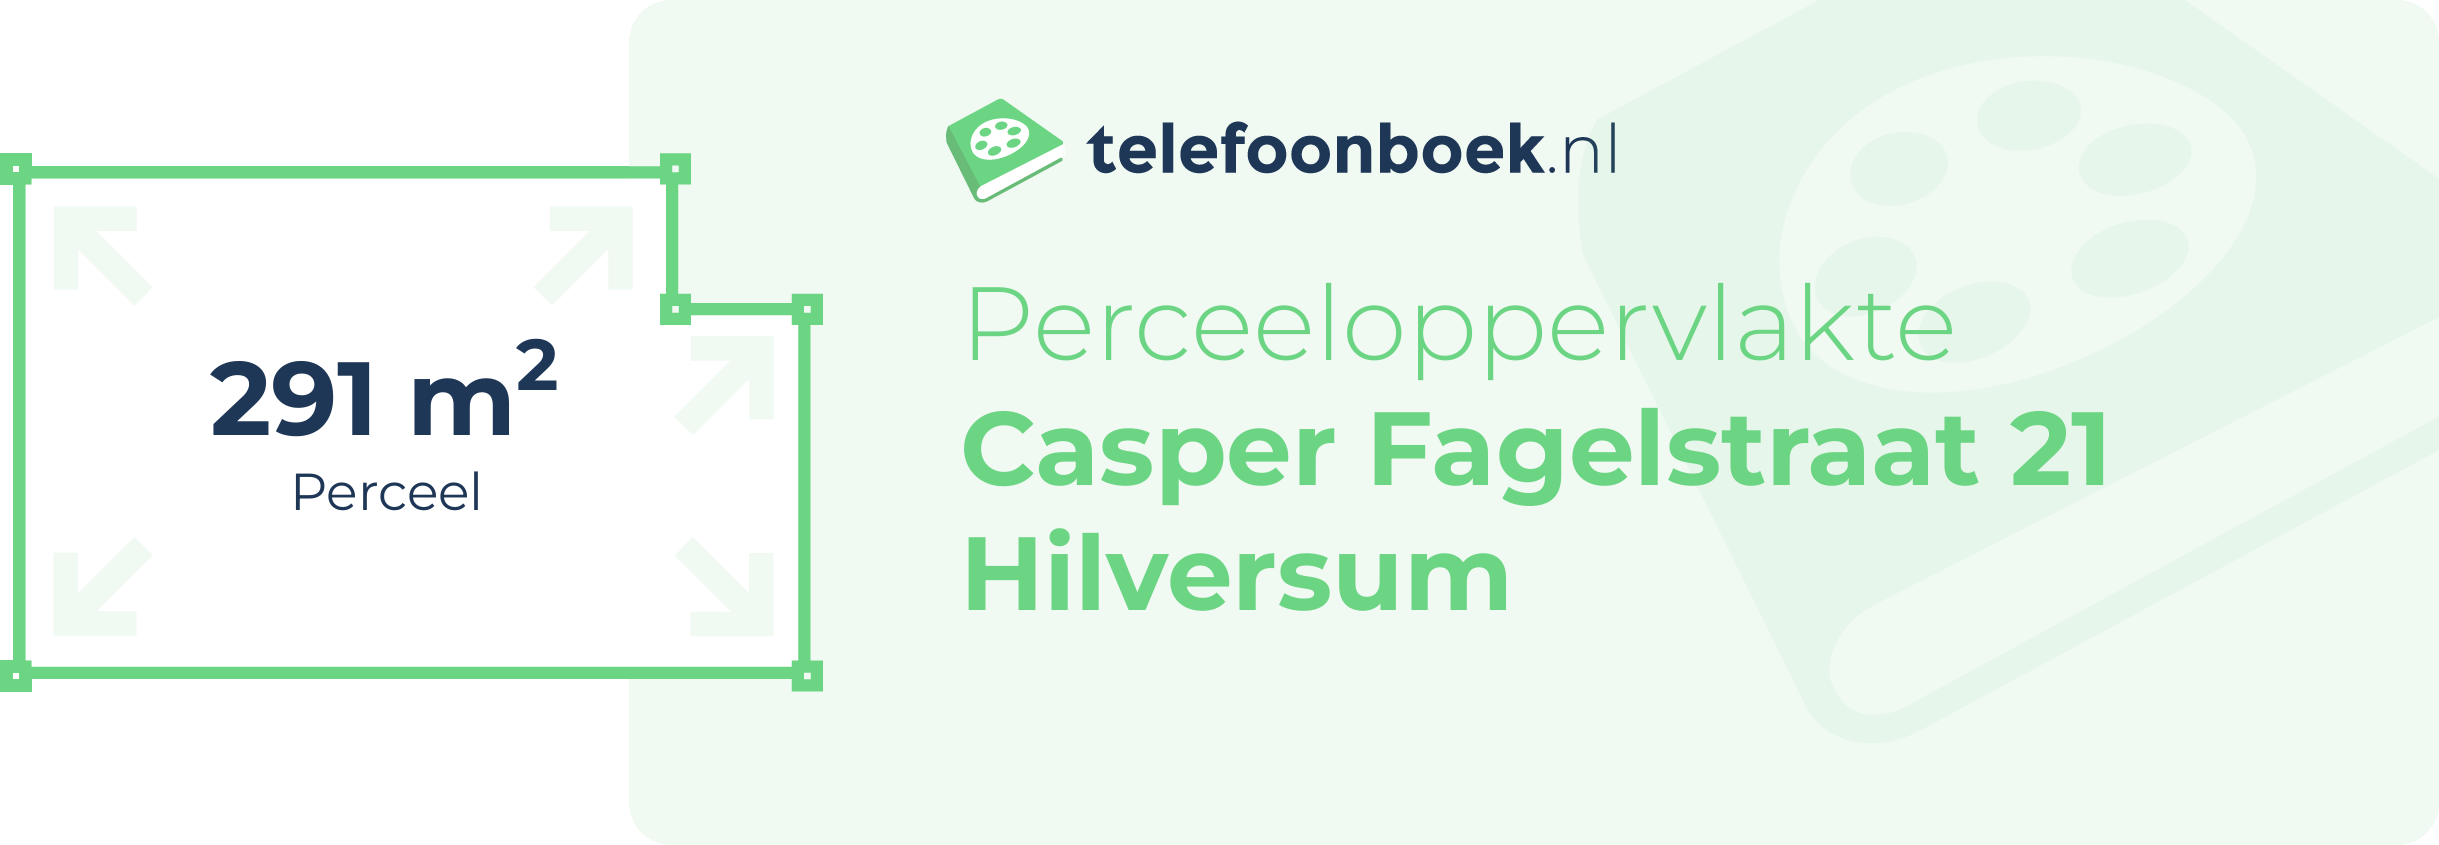 Perceeloppervlakte Casper Fagelstraat 21 Hilversum